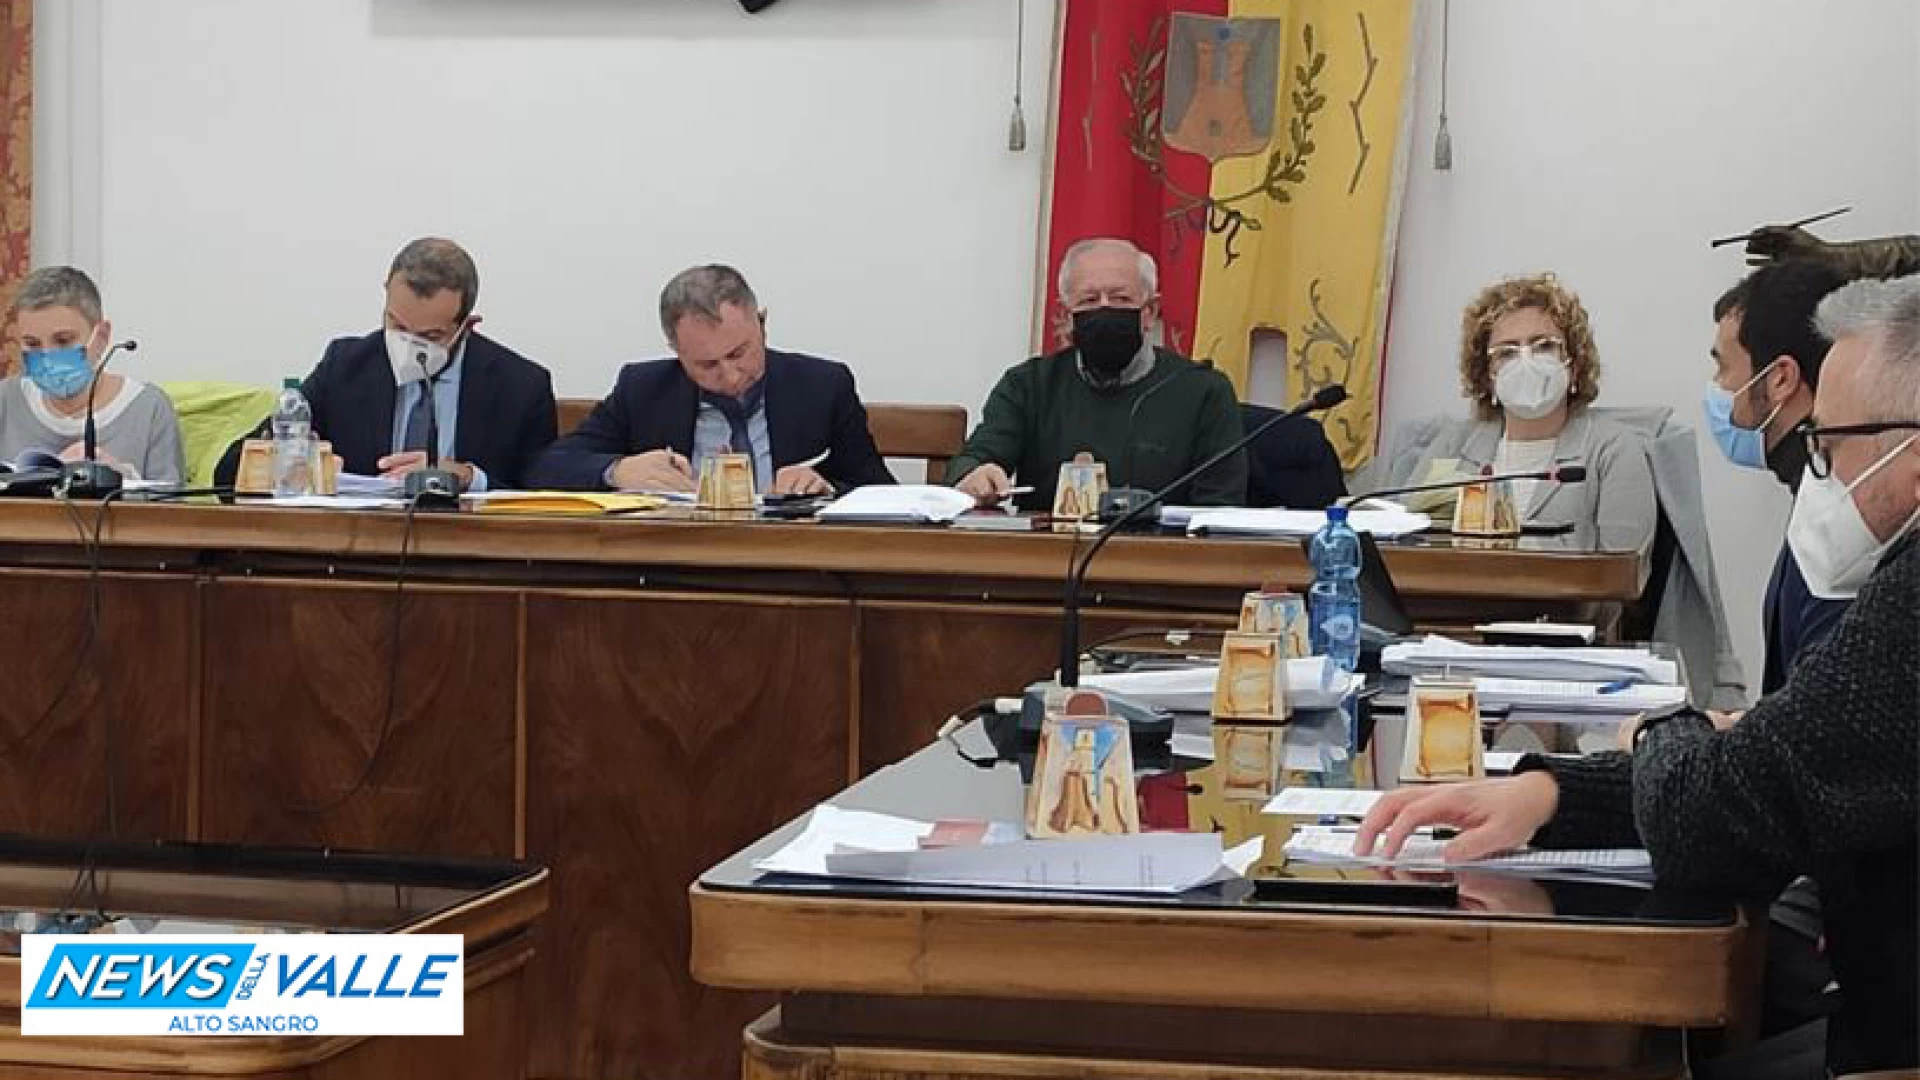 Castel Di Sangro: il Consiglio comunale approva il bilancio Consolidato 2020 e guarda allo sviluppo territoriale e all’efficientamento energetico.